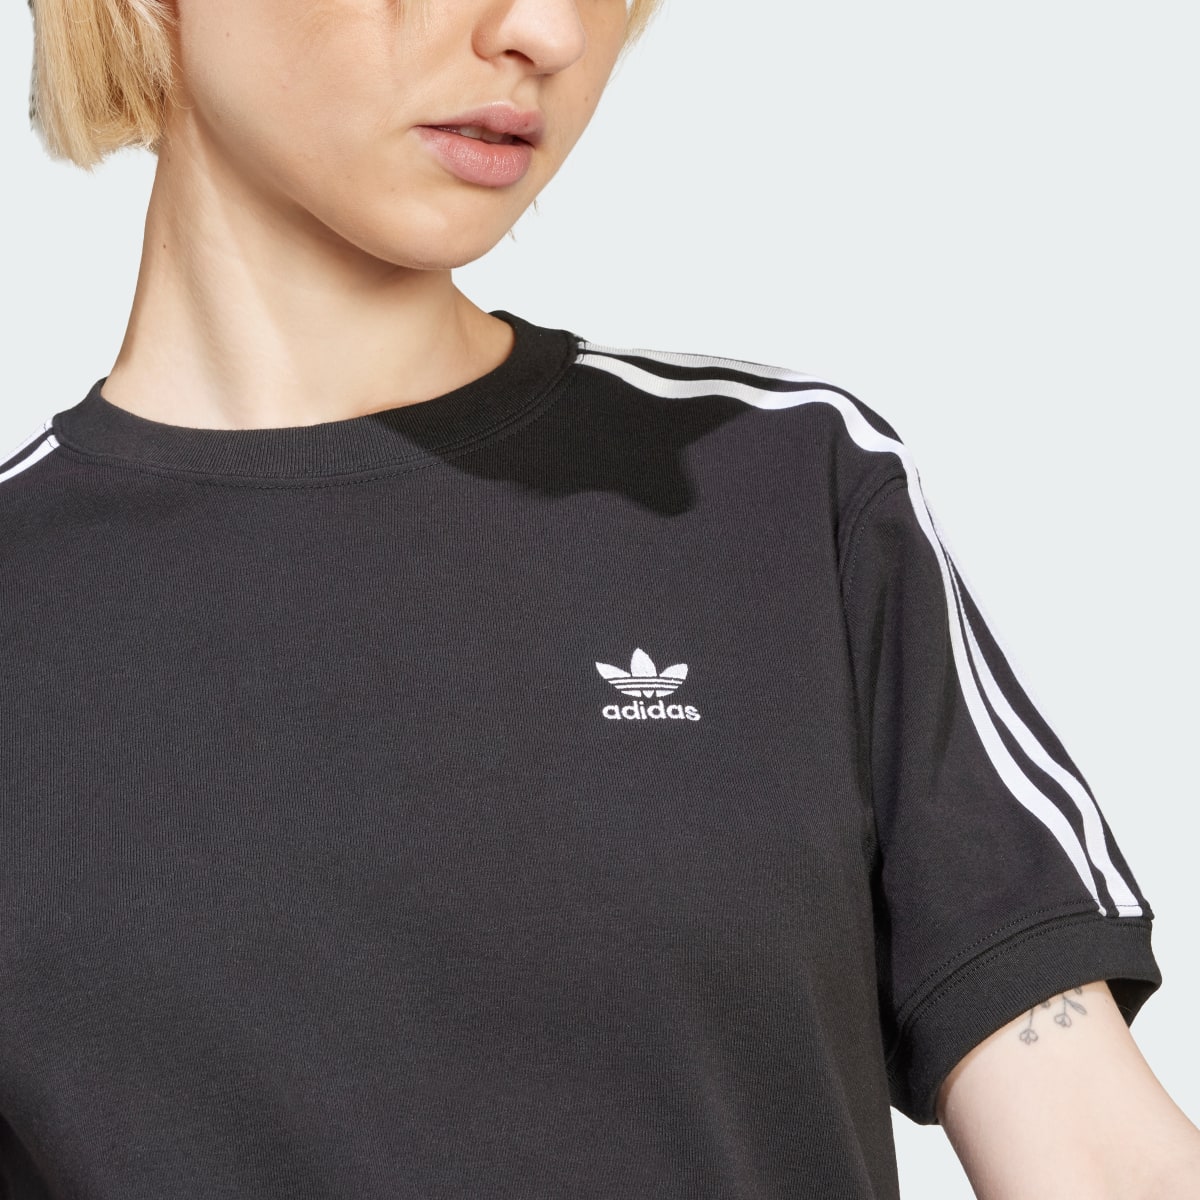 Adidas 3-Stripes T-Shirt. 5